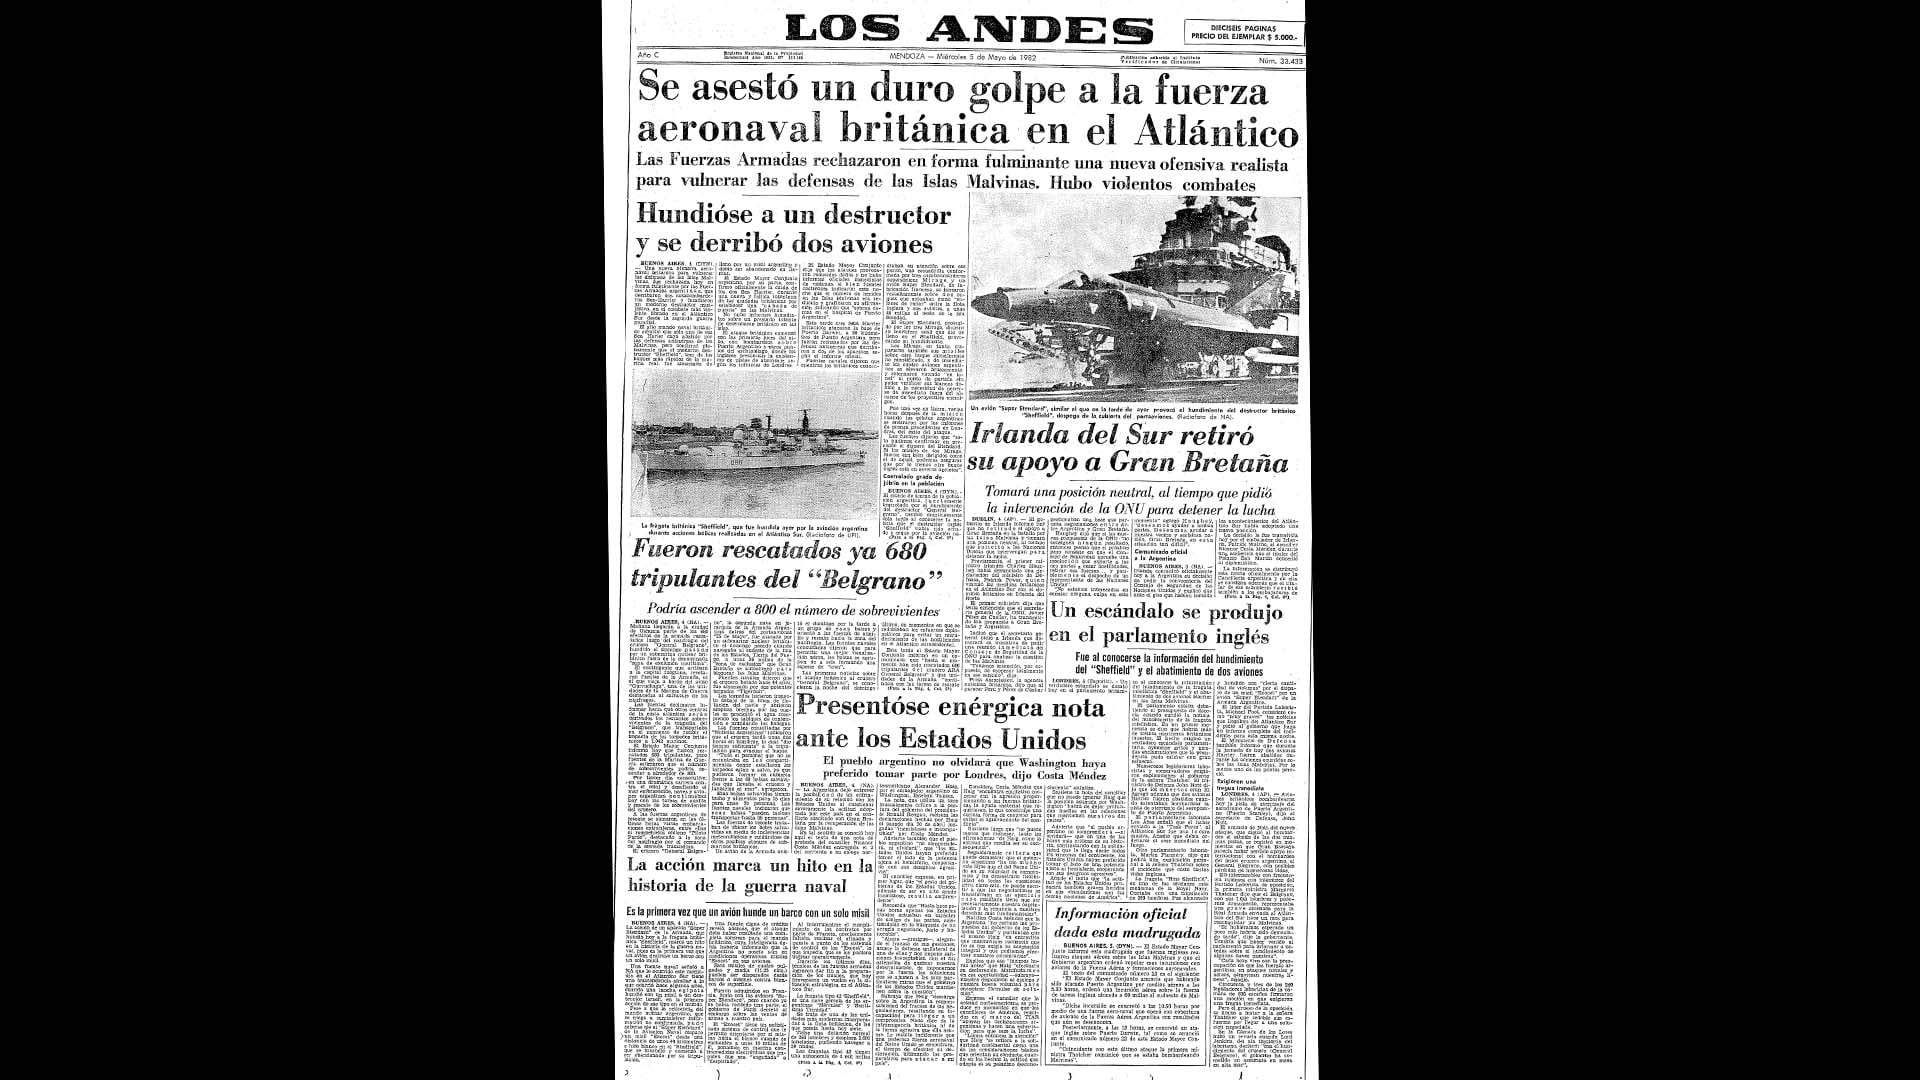 Un recorrido día a día por las portadas del medio más importante de Mendoza, para conocer el pulso diario de la guerra que enluteció a todo el país.